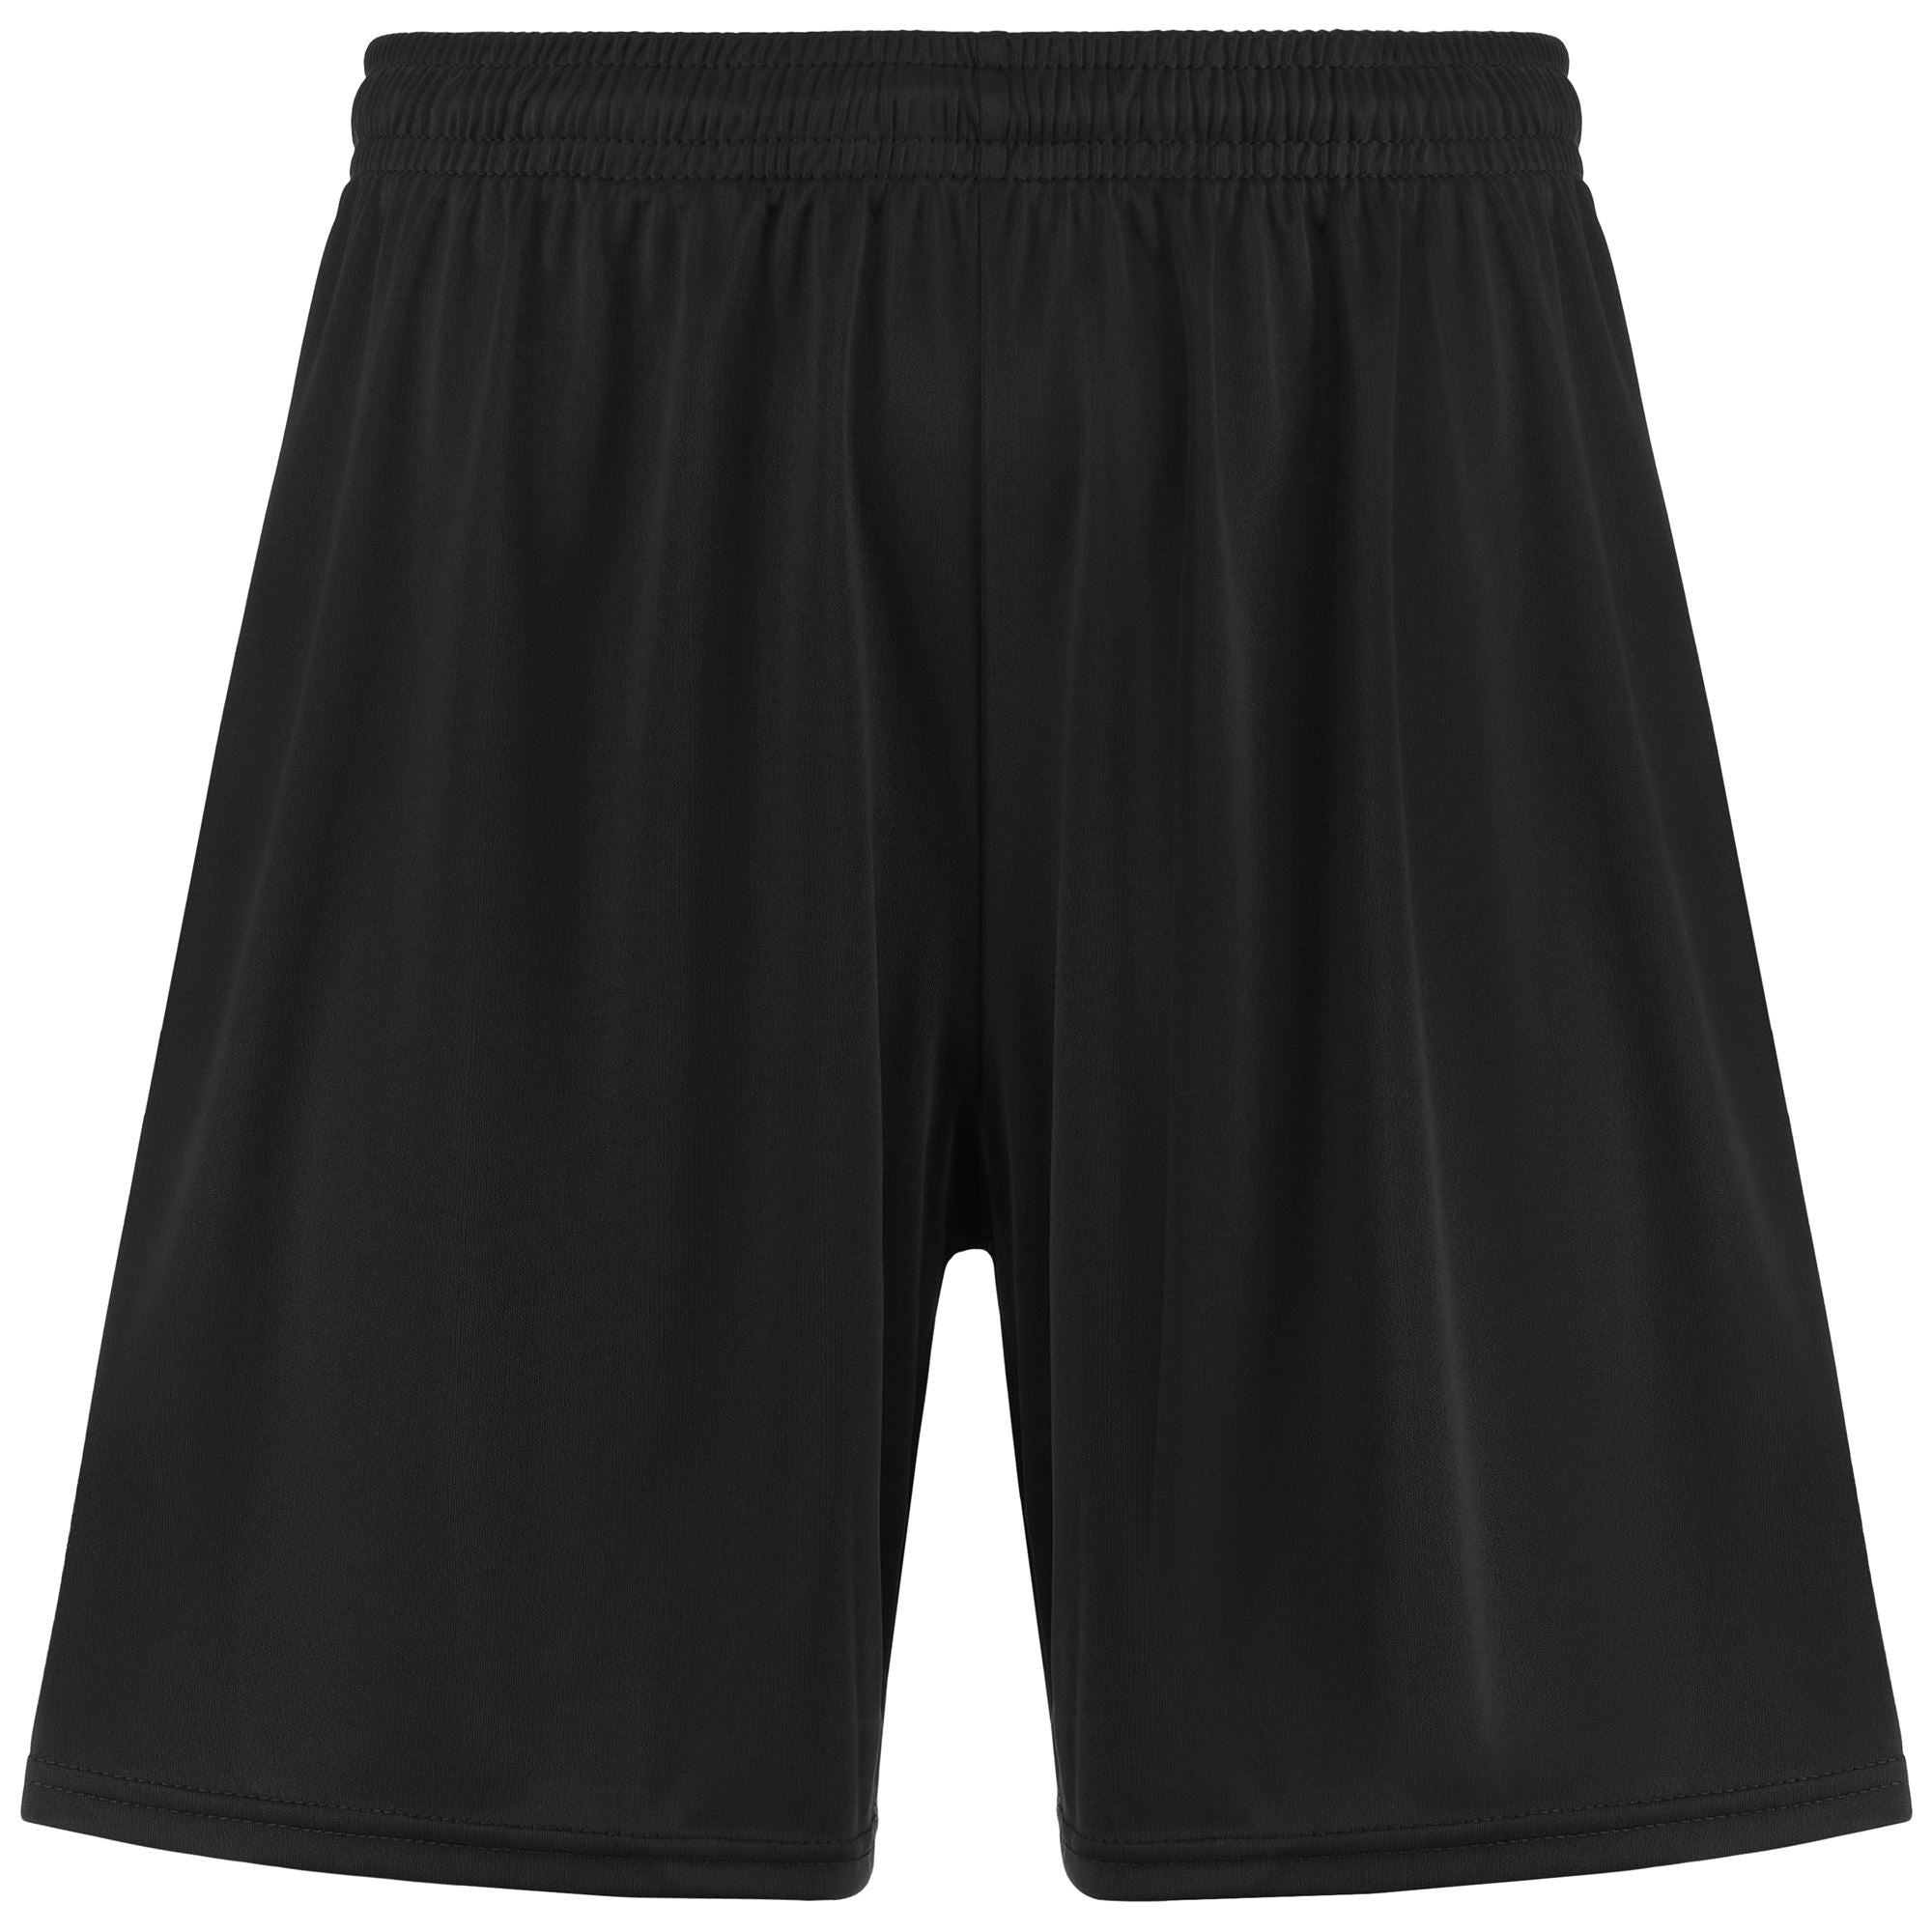 Buy IntelliSoft Hype Cotton Rich [Pich Black] Men's Shorts – XYXX Apparels